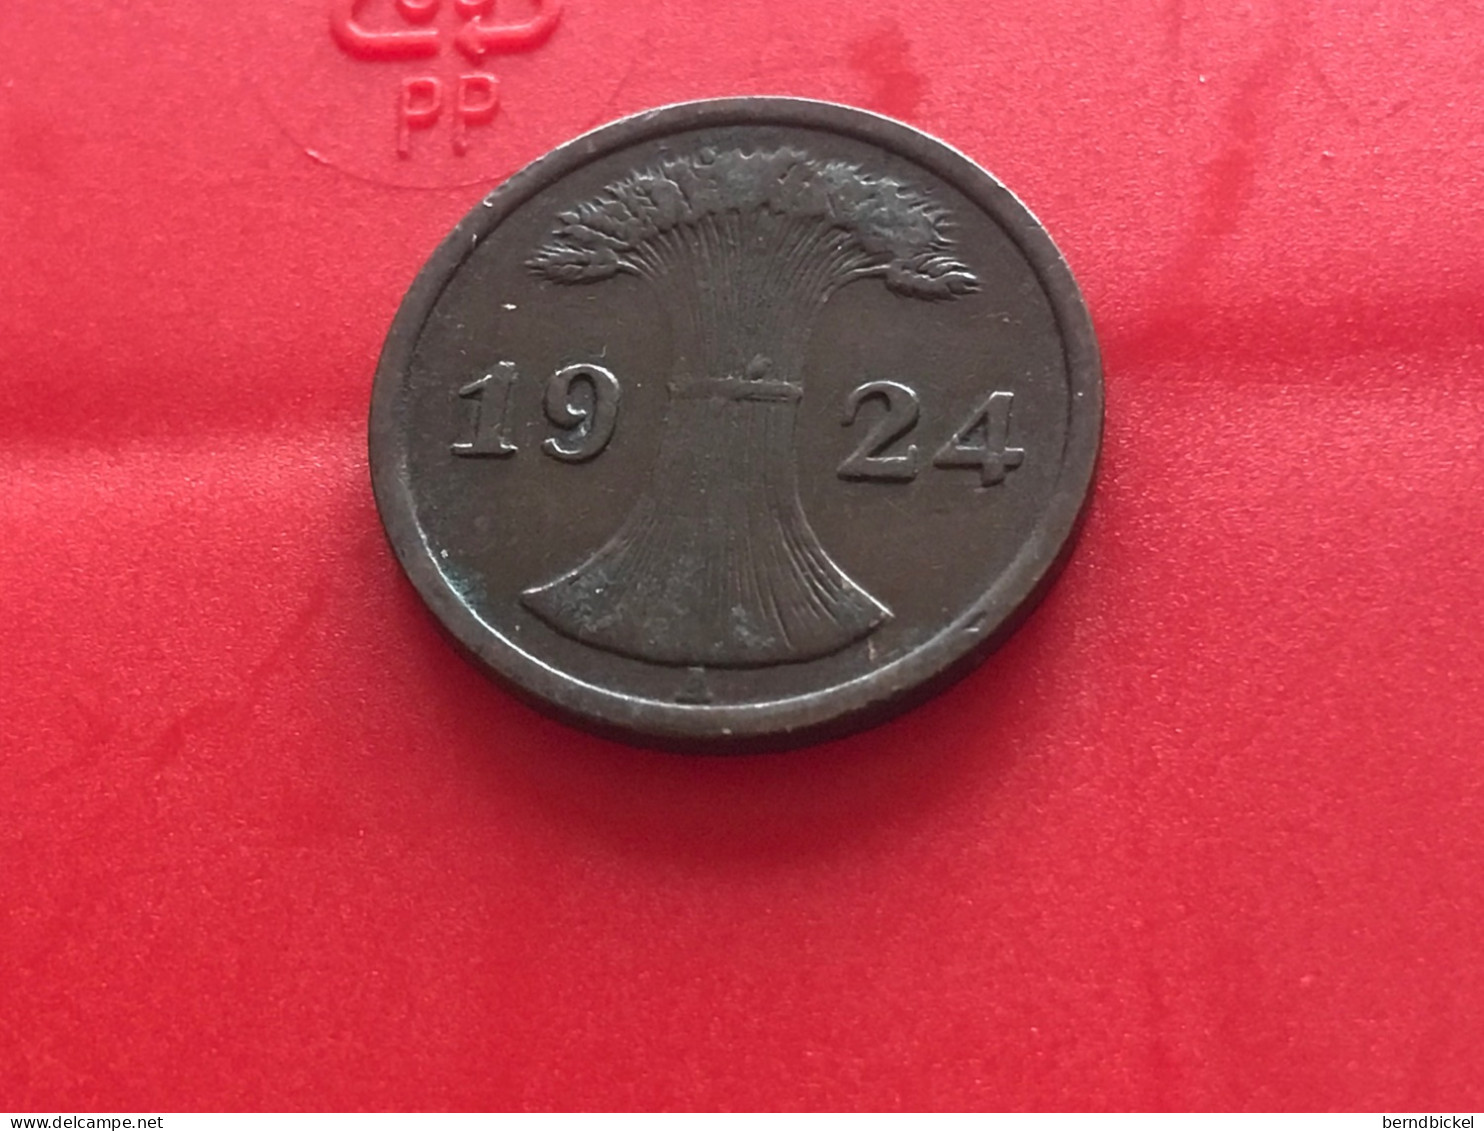 Münze Münzen Umlaufmünze Deutschland Deutsches Reich 2 Rentenpfennig 1924 Münzzeichen A - 1 Rentenpfennig & 1 Reichspfennig